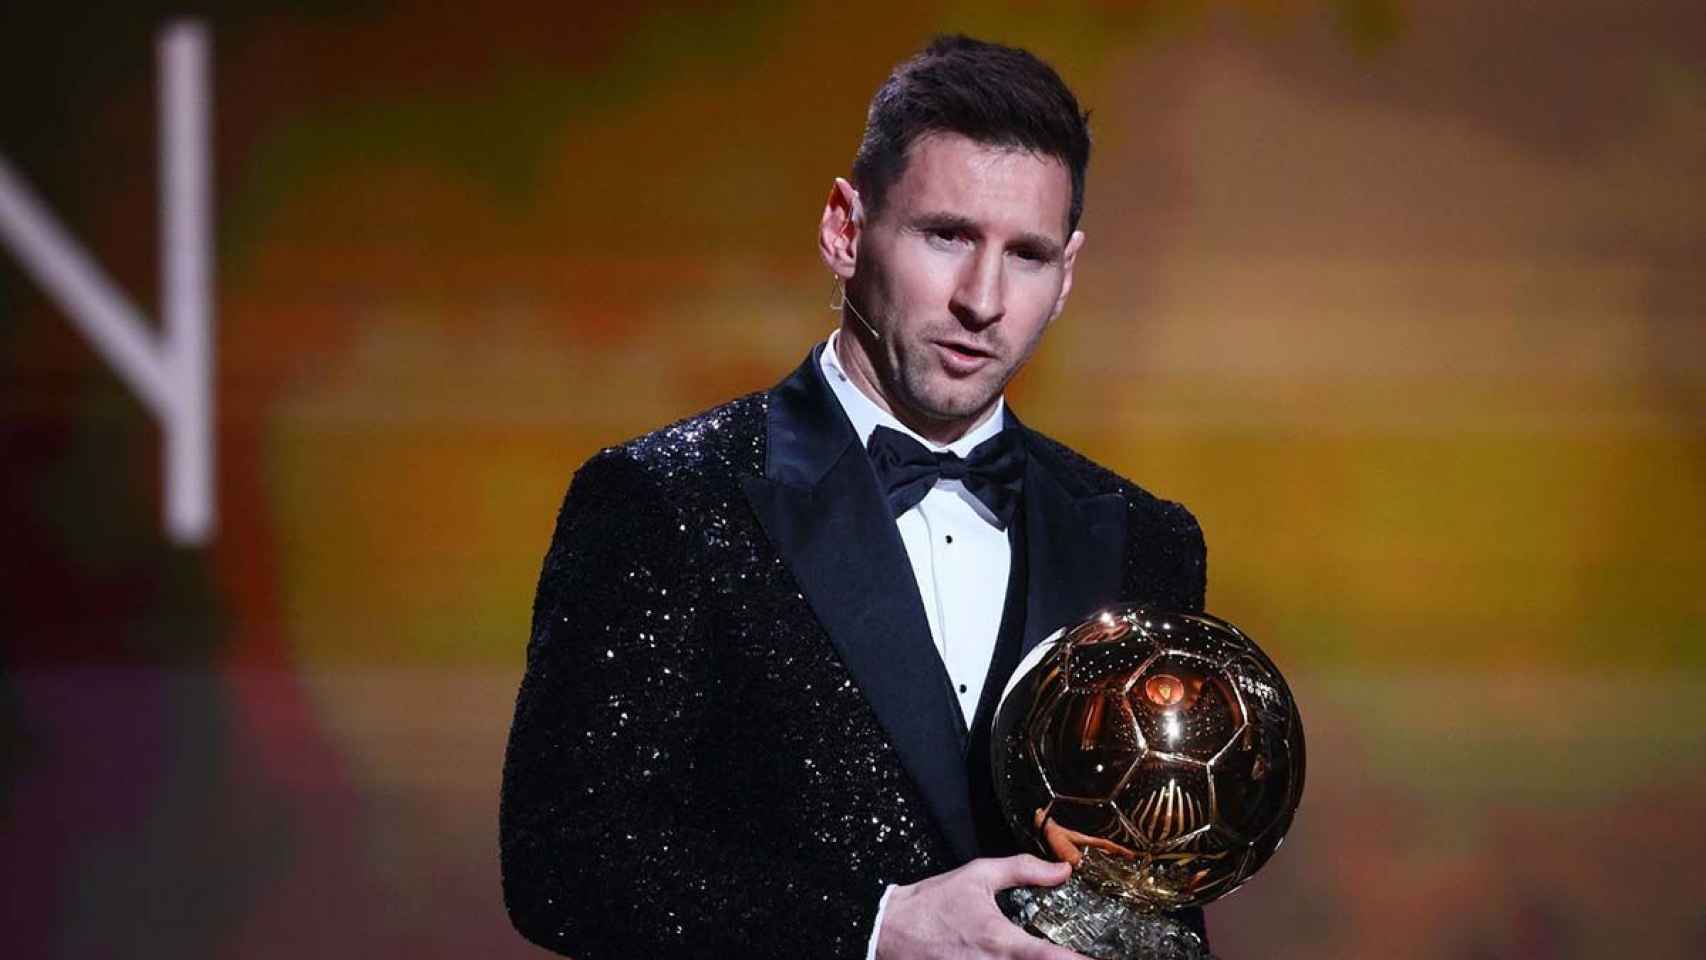 Leo Messi, principal figura de Adidas, recibe un homenaje con el Balón de Oro / REDES